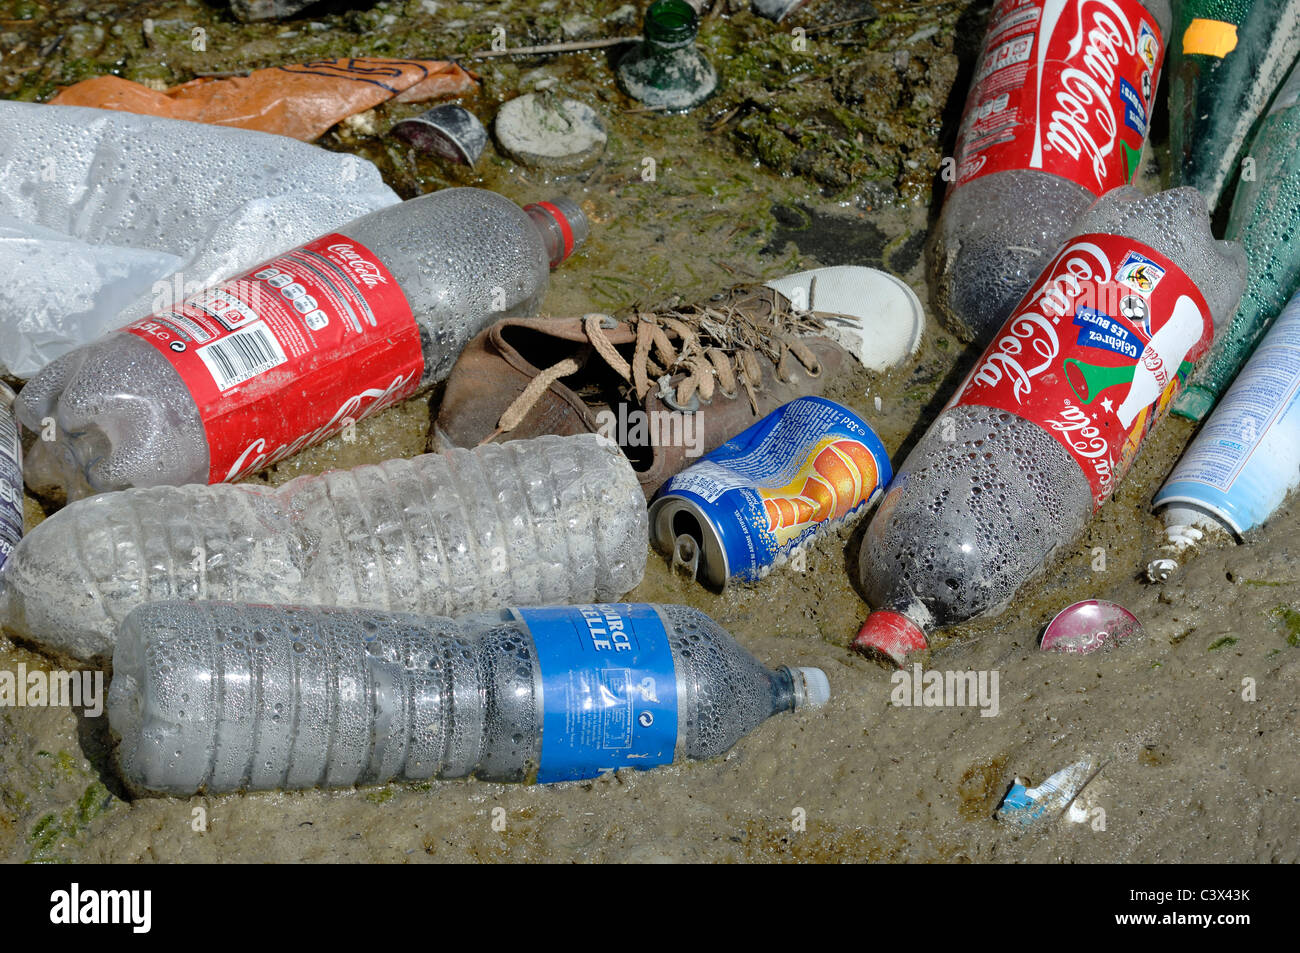 Bouteilles en plastique jetées, bouteilles de Coca Cola, canette de boissons gazeuses, Canvas Shoe et autres déchets ou ordures, Camargue Wetlands, France Banque D'Images